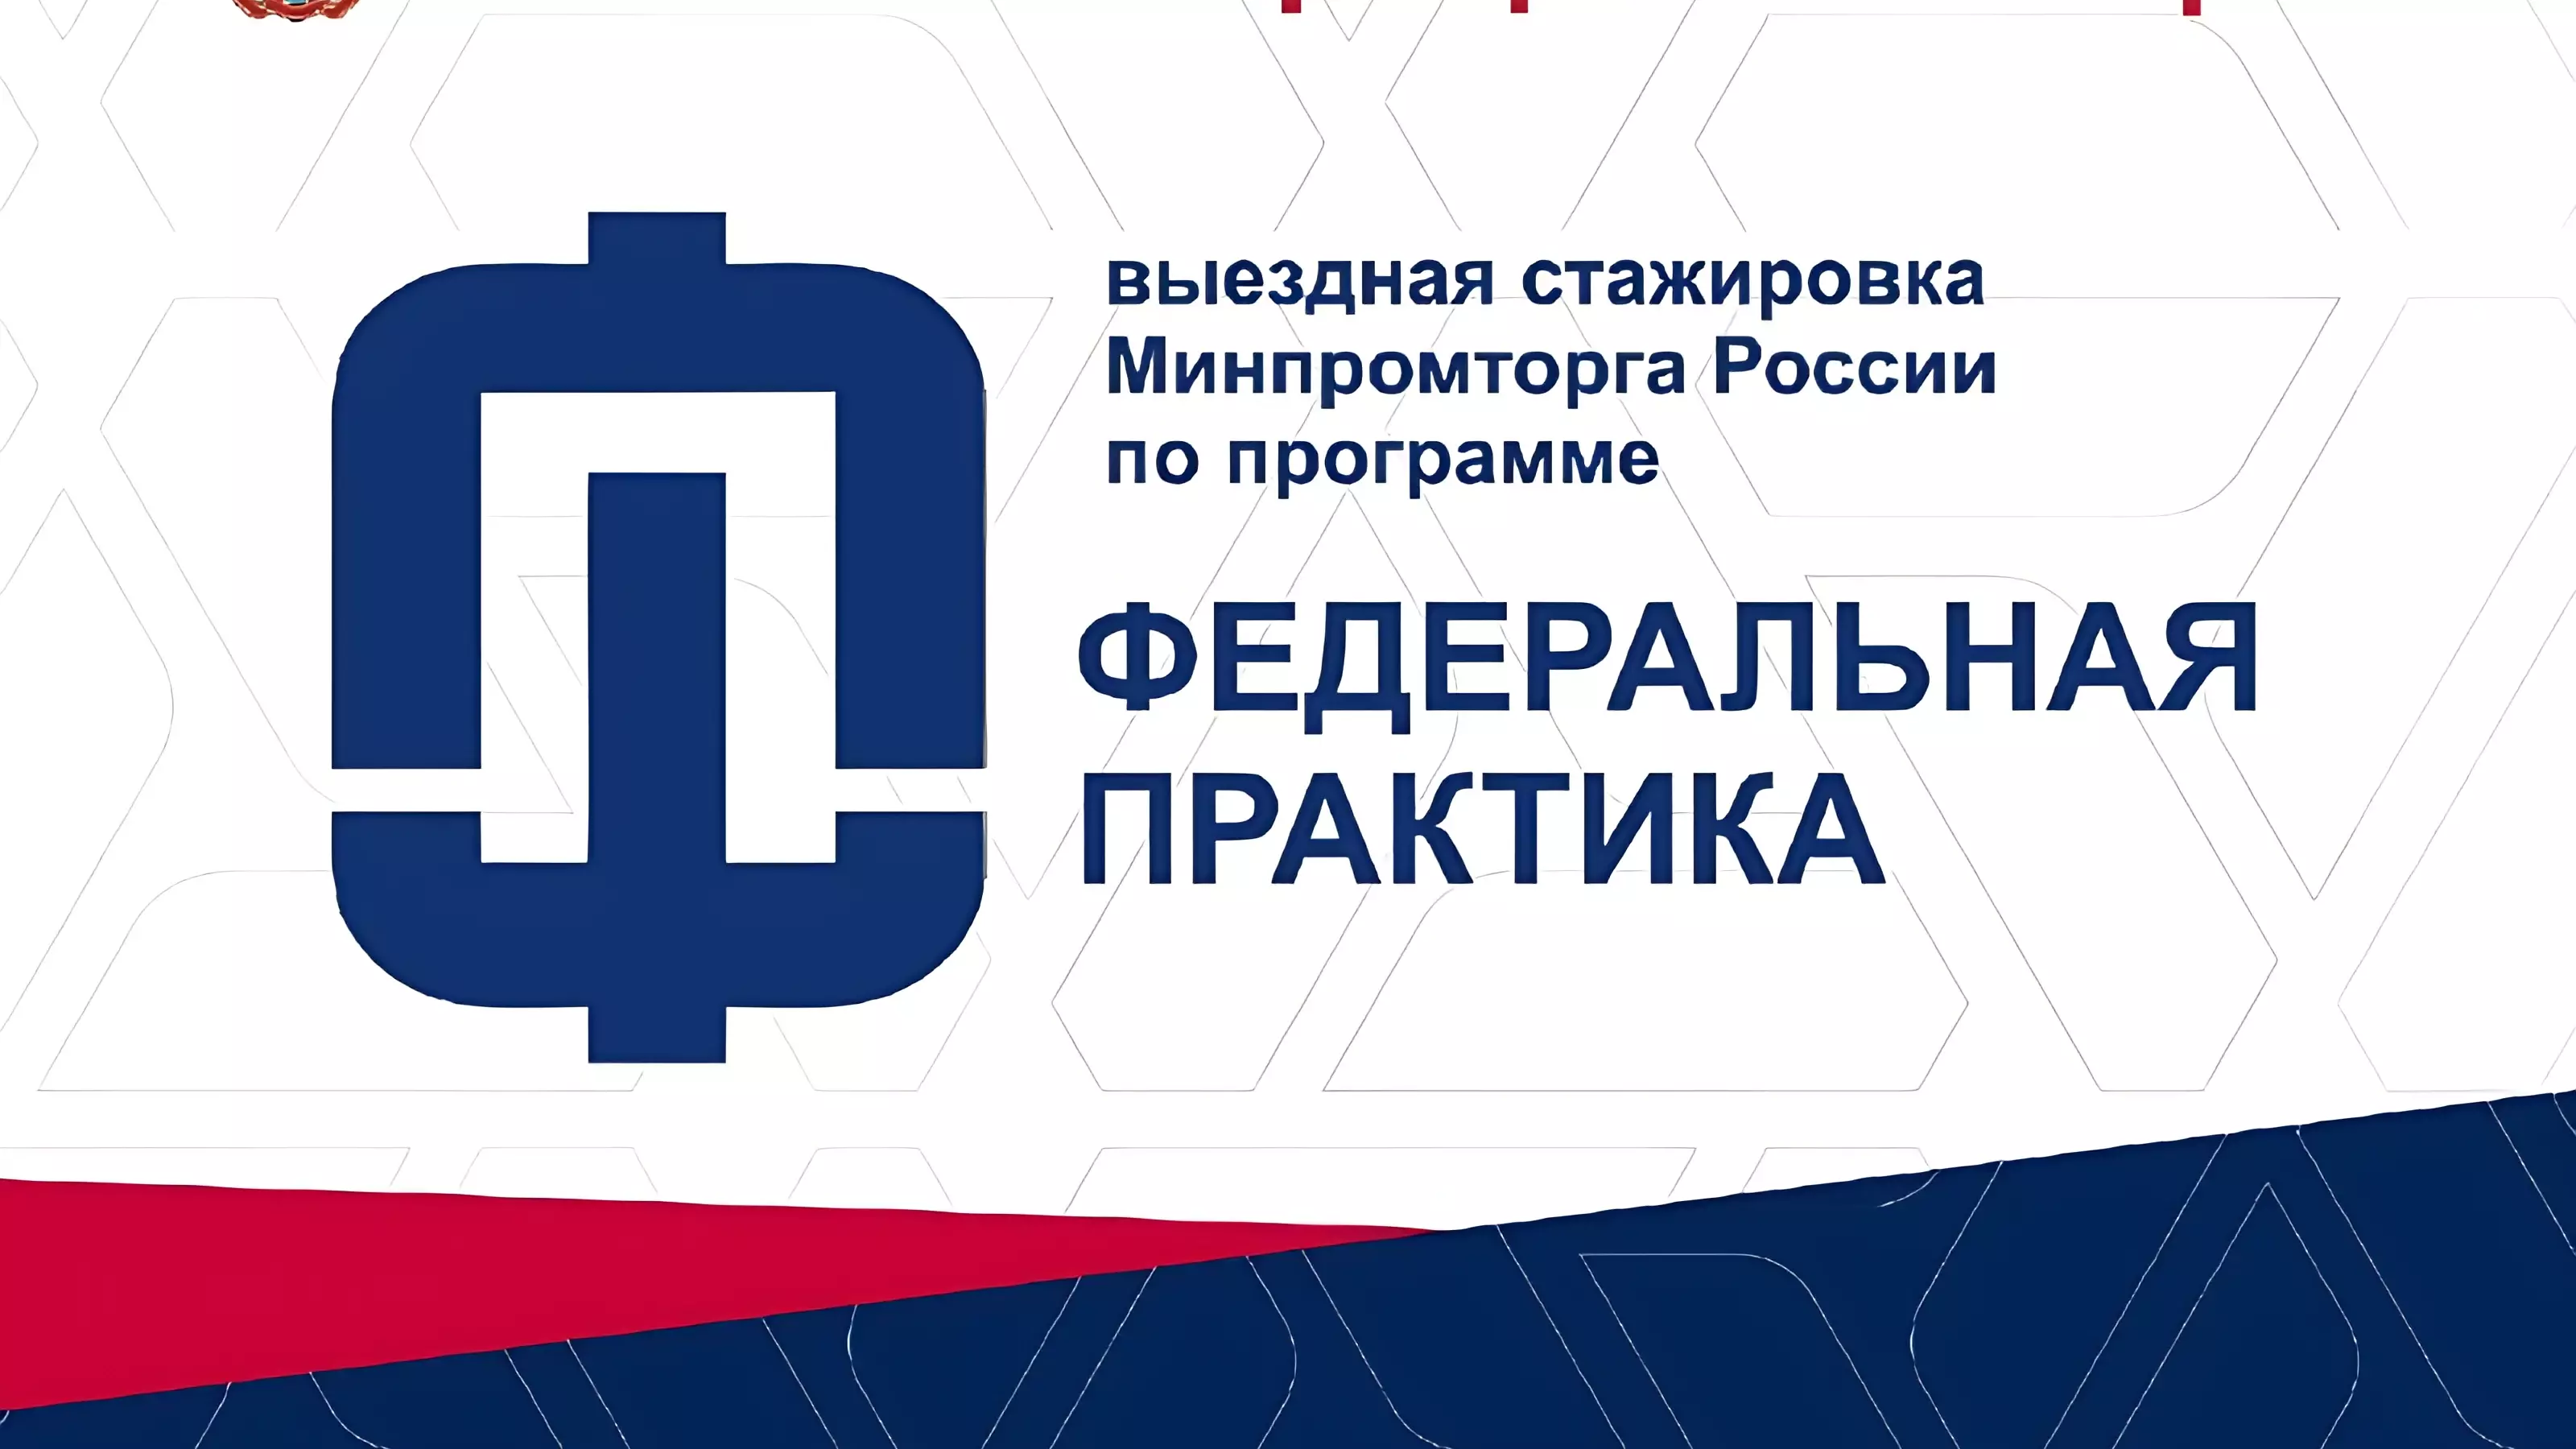 Омских бизнесменов пригласили на выездную стажировку Минпромторга РФ